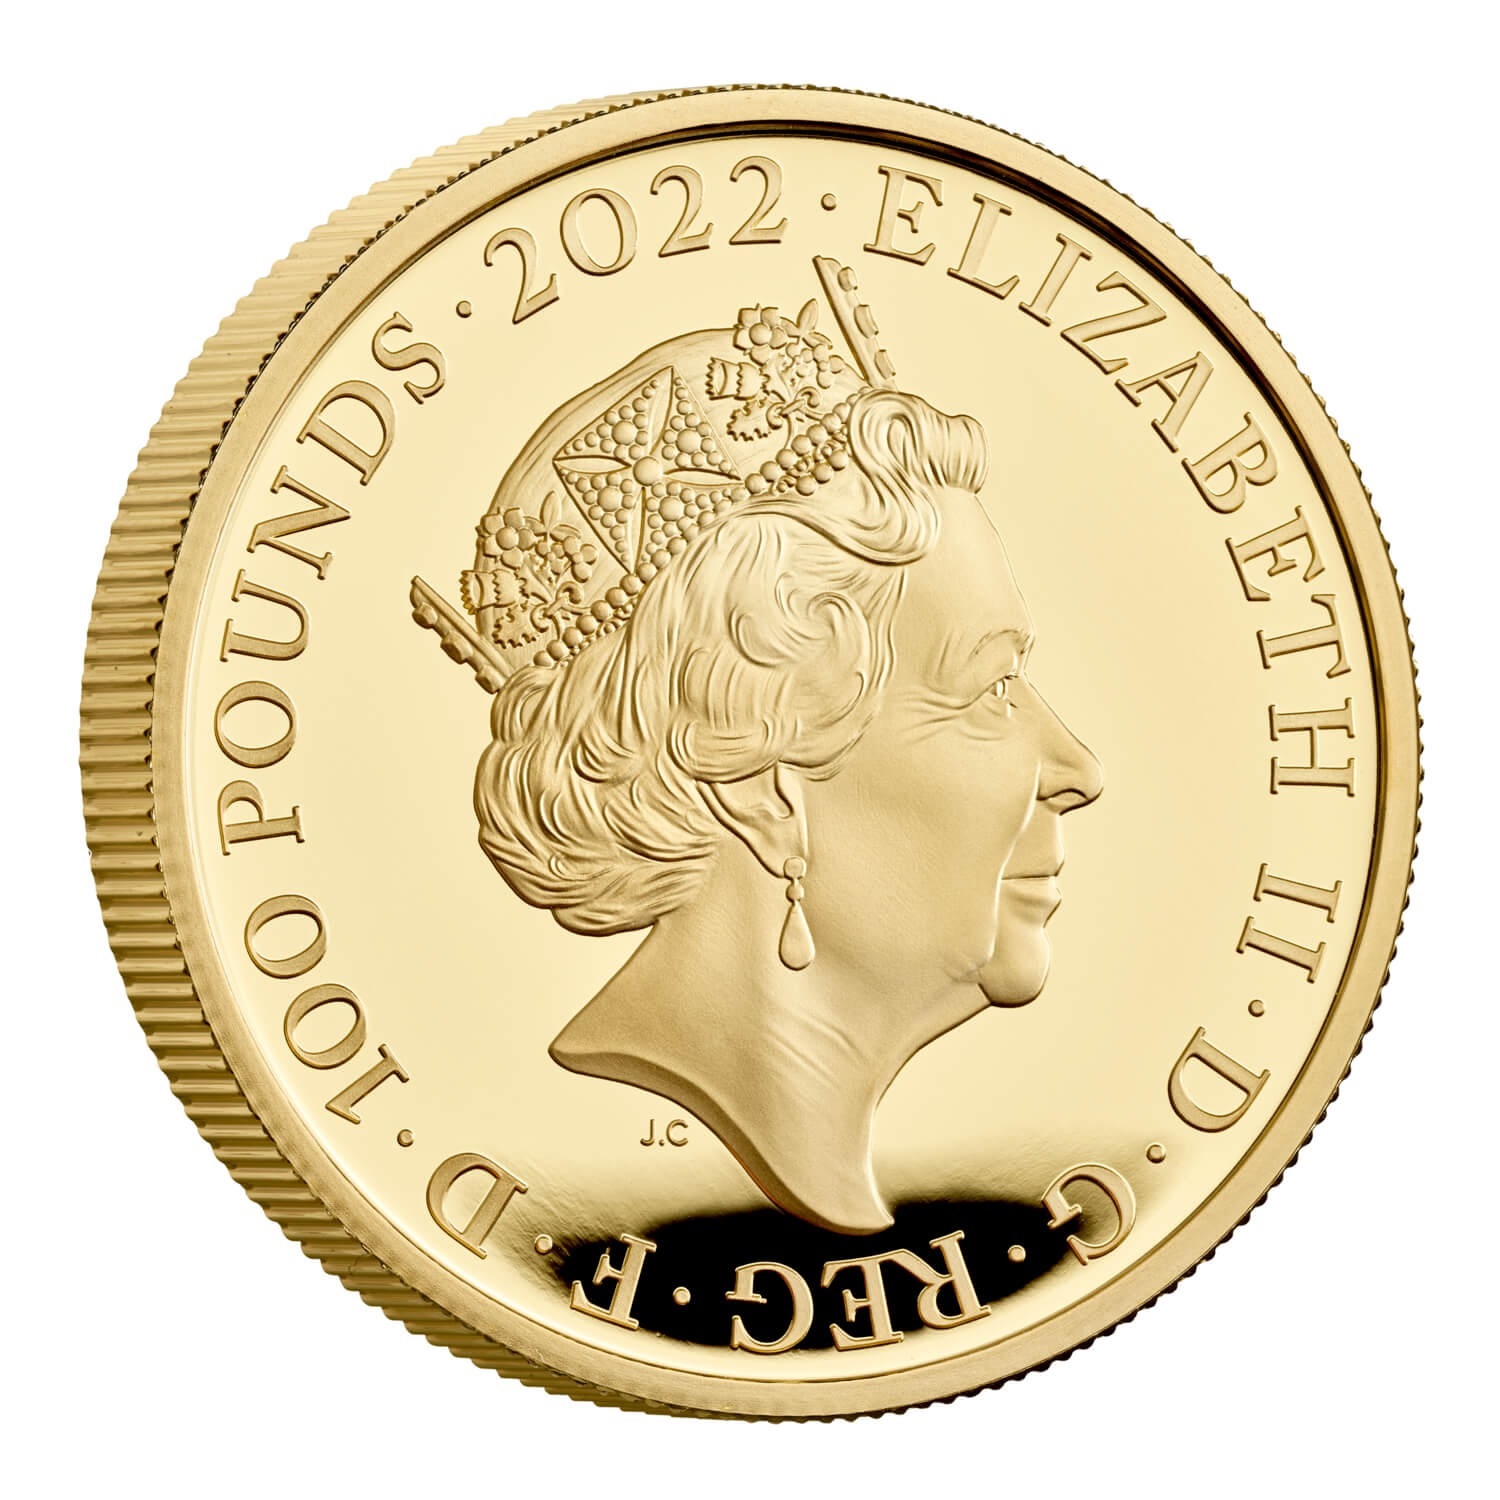 (W185.100.P.2022.UK22E7G1O) 100 Pounds UK 2022 1 oz Proof gold - King Edward VII Obverse (zoom)